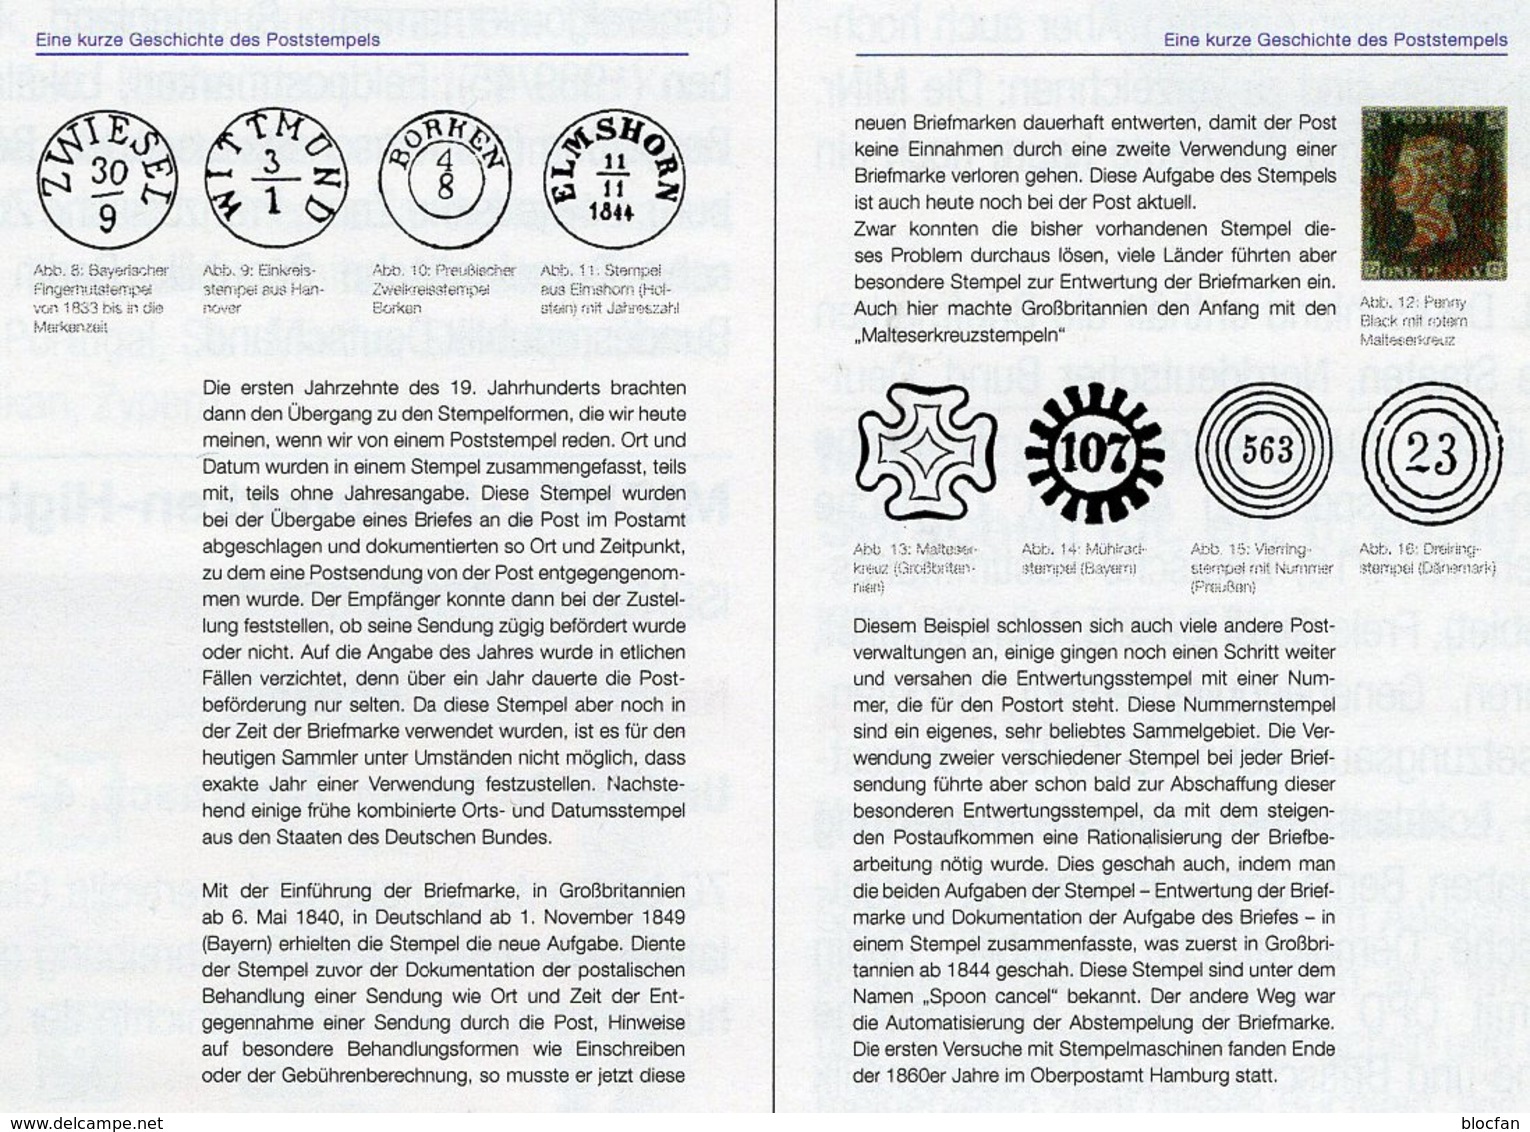 MICHEL Stempel Verstehen Ratgeber 2020 Neu 50€ Briefmarken Stempelarten Wert Bestimmen Stamps ISBN978 3 95402 252 6 - Ediciones Especiales